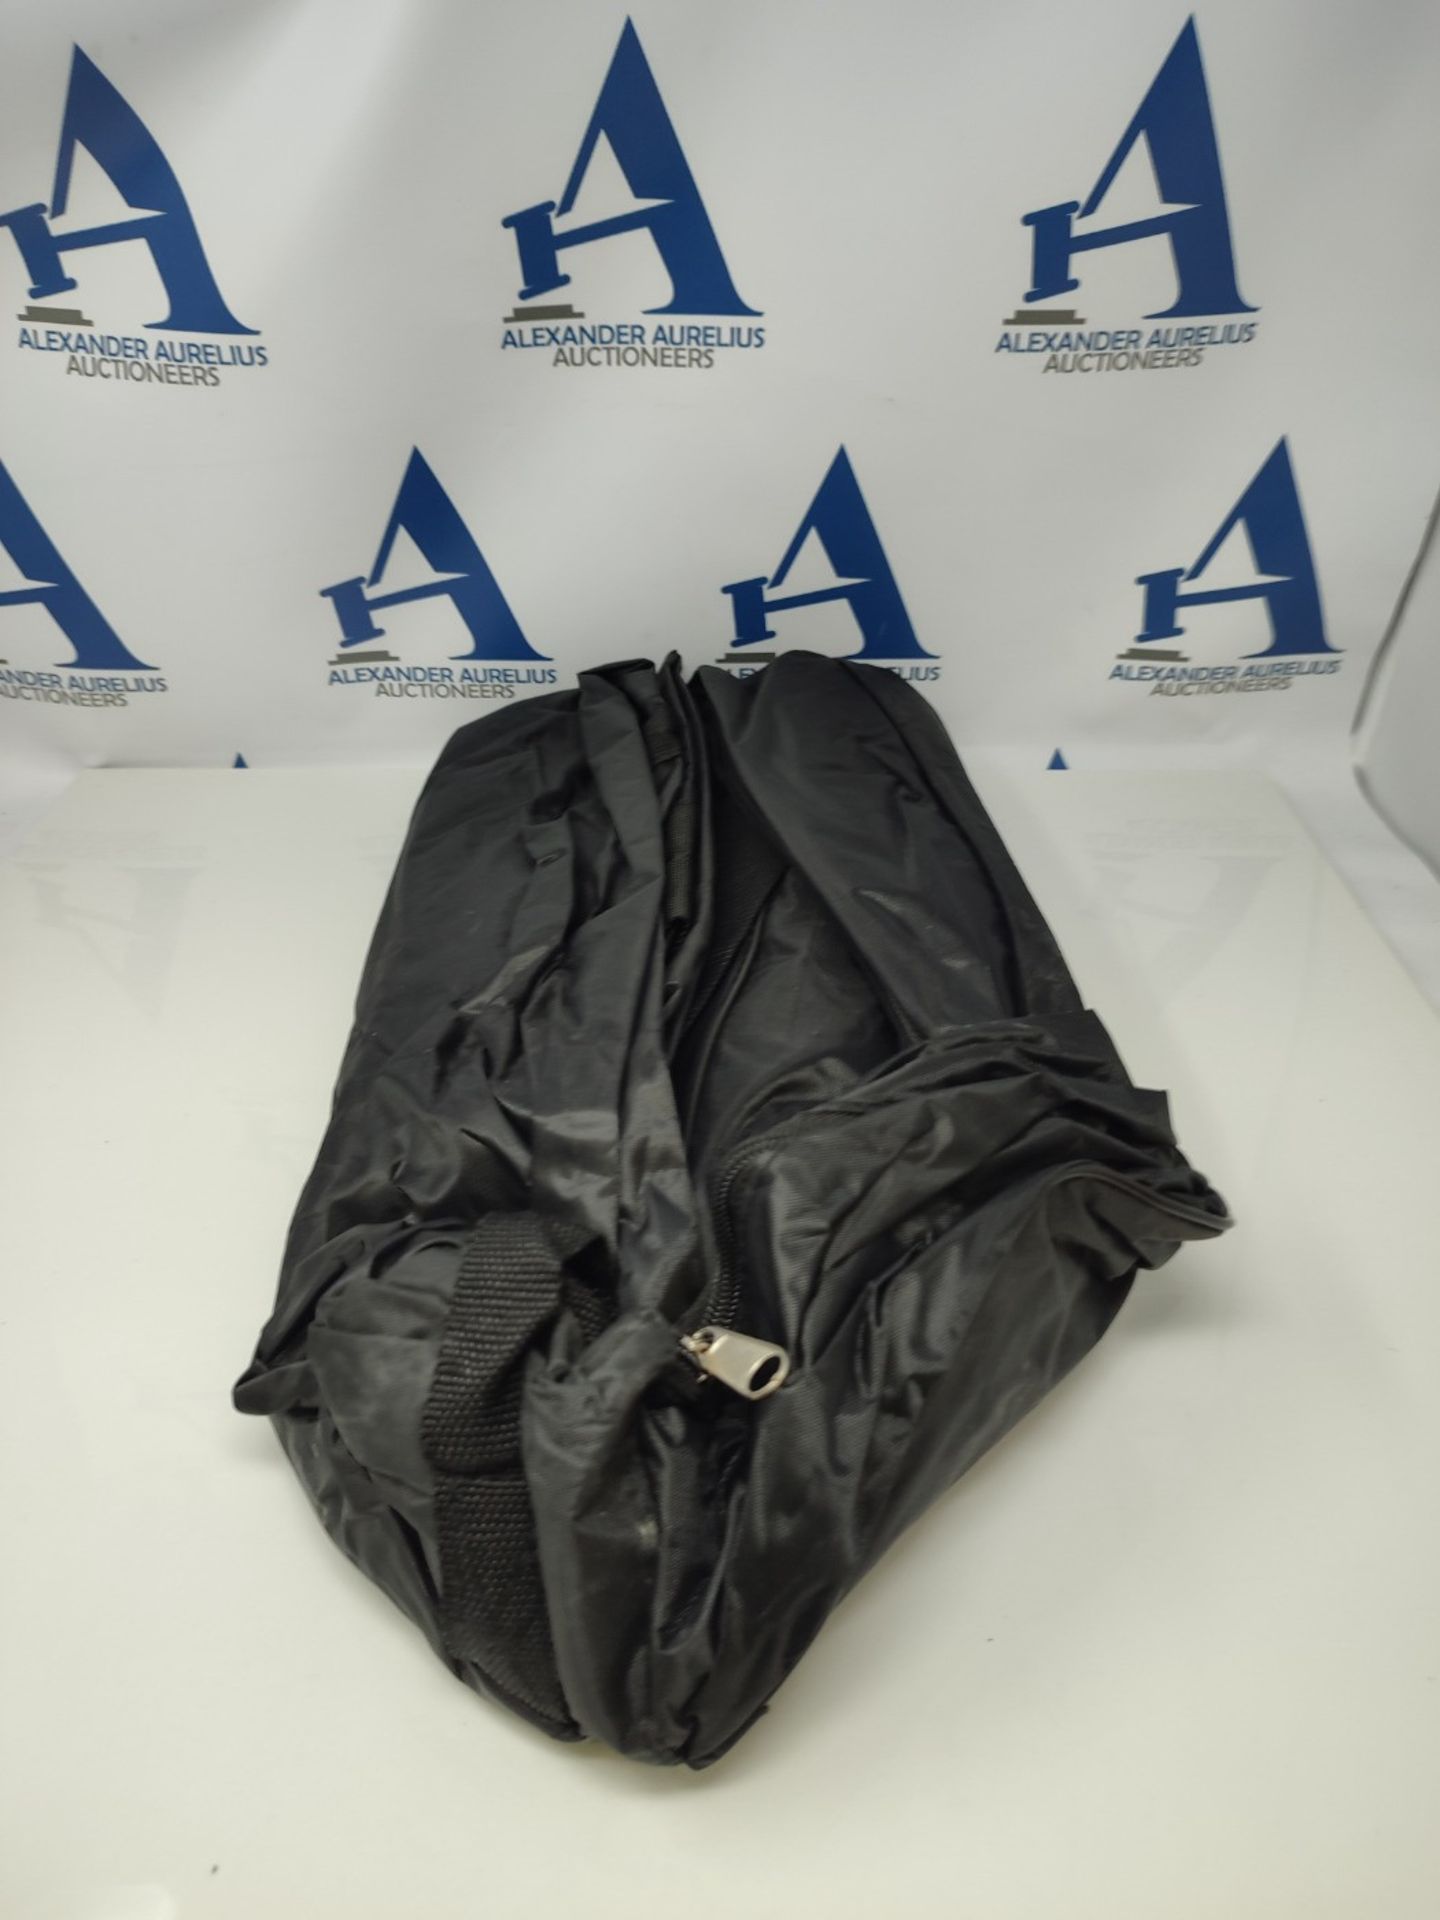 Petex, ski bag in black, 44140004 - Image 2 of 2